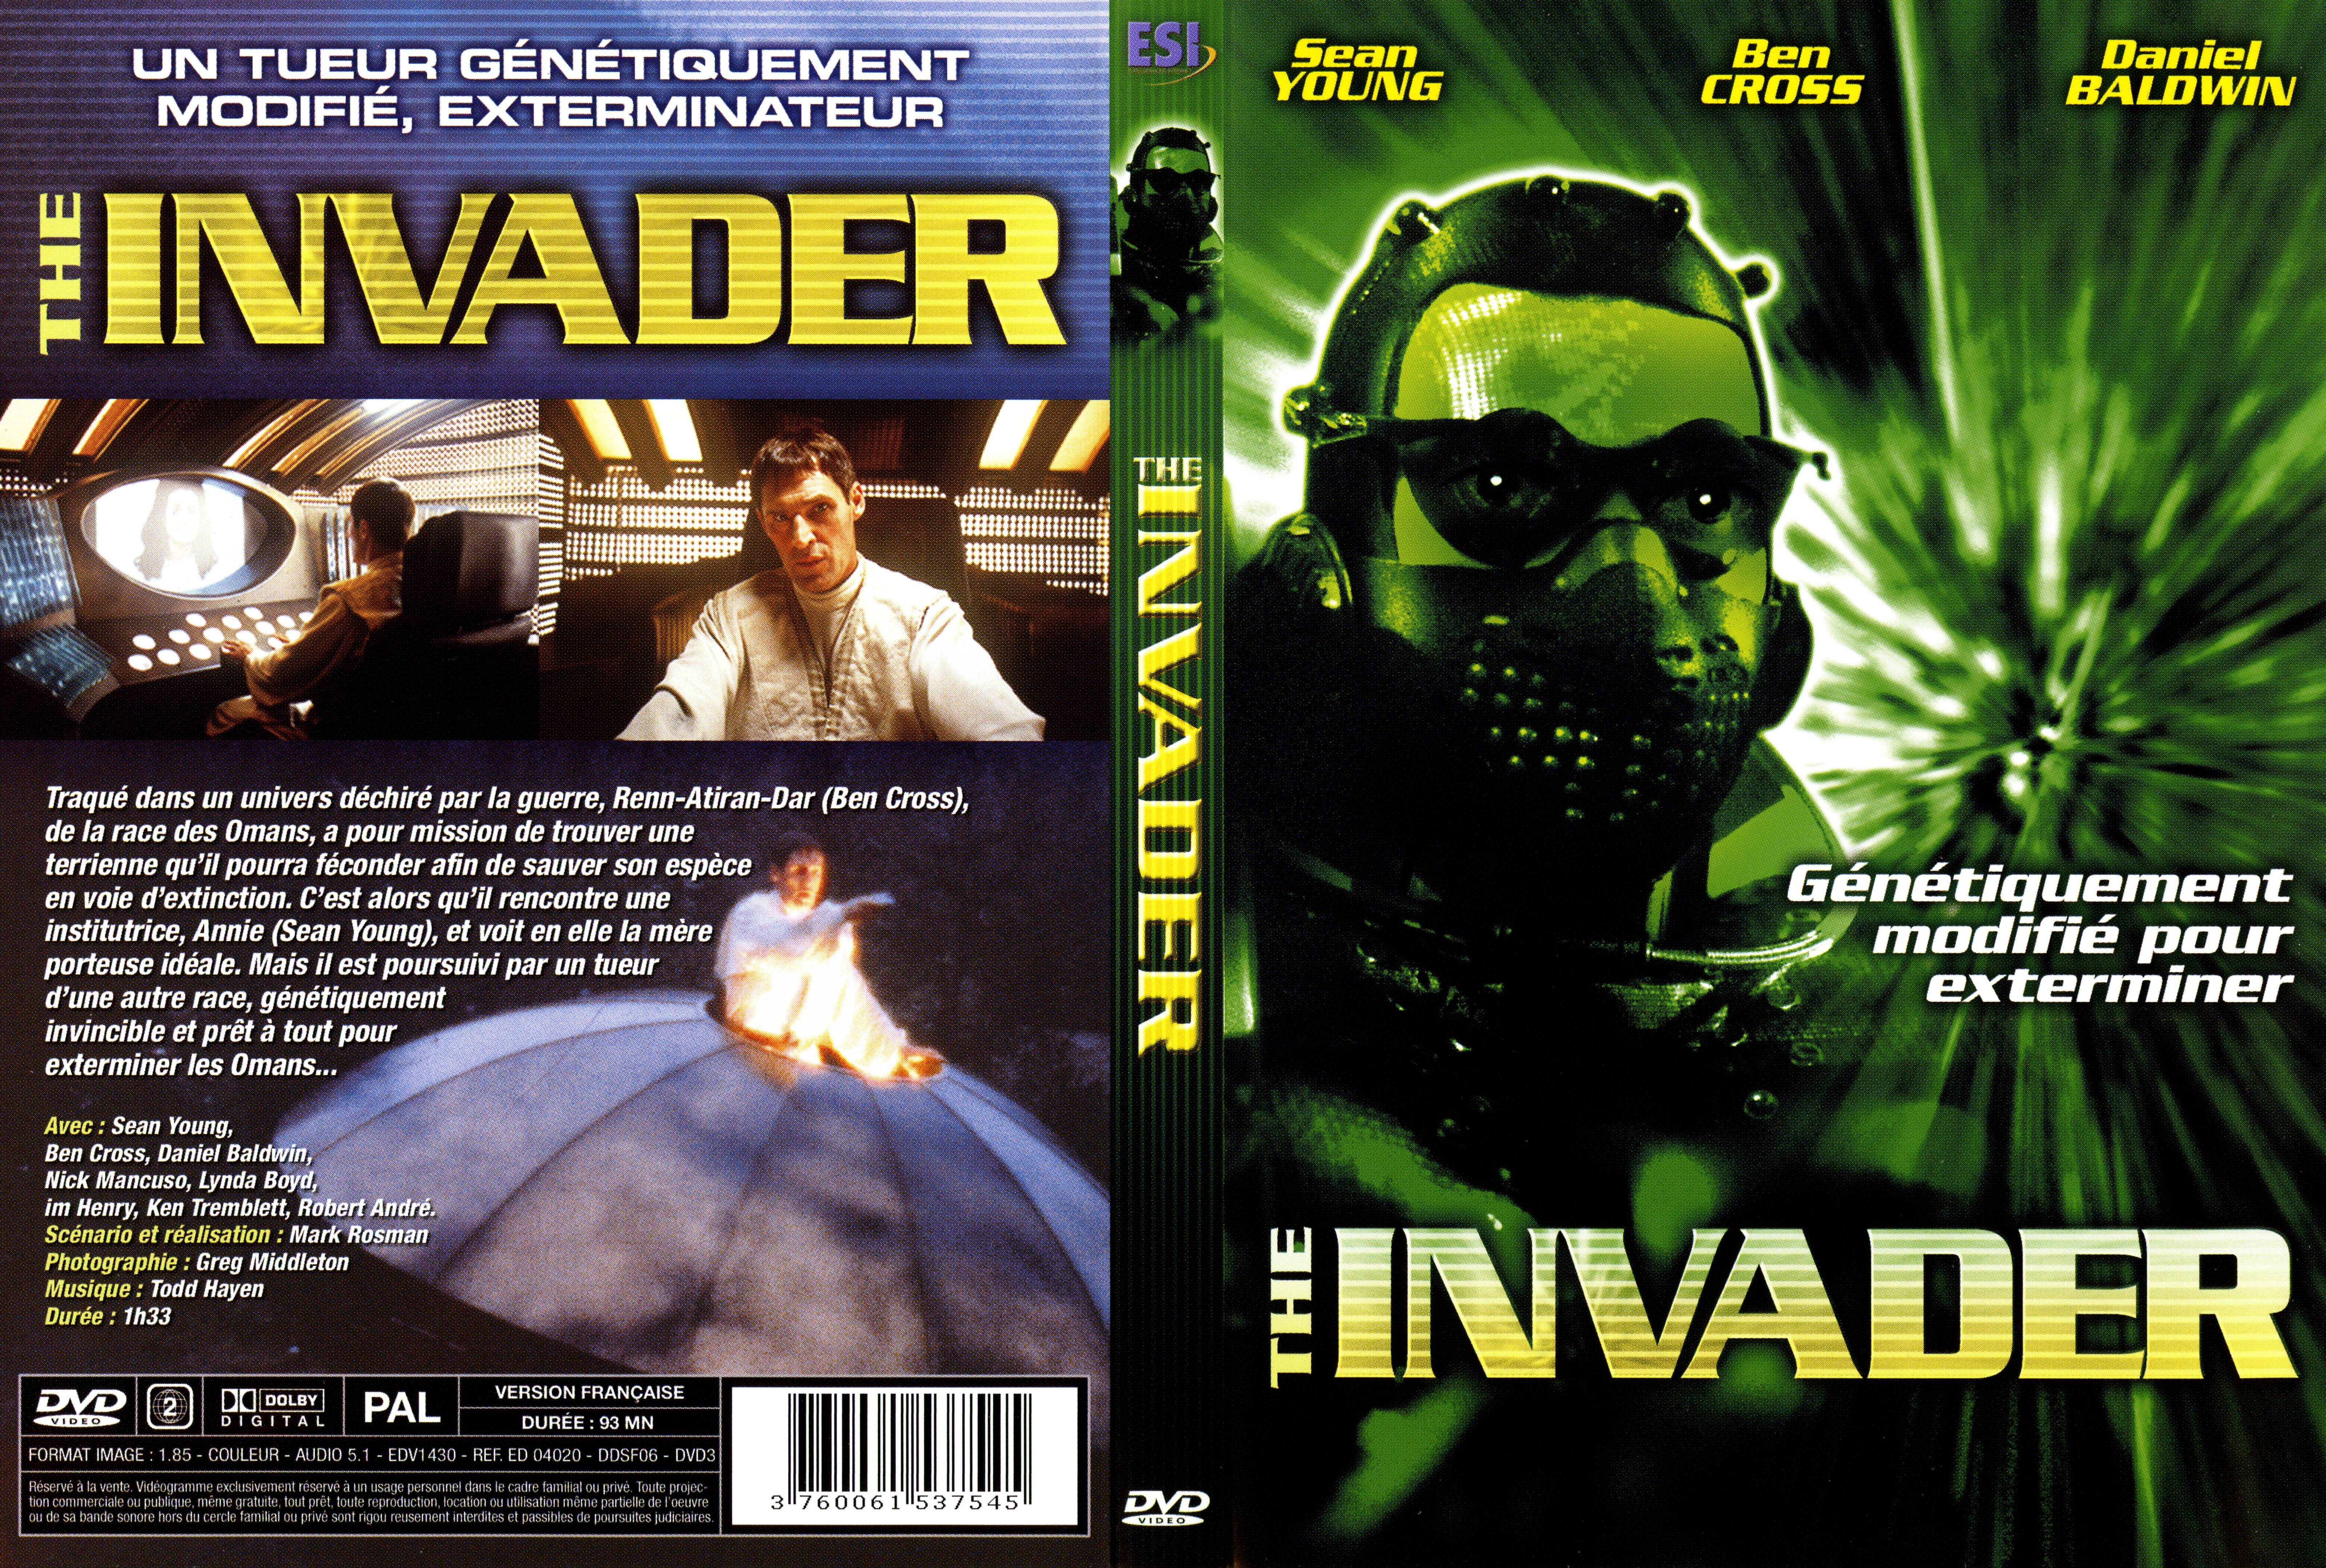 Jaquette DVD The invader v3